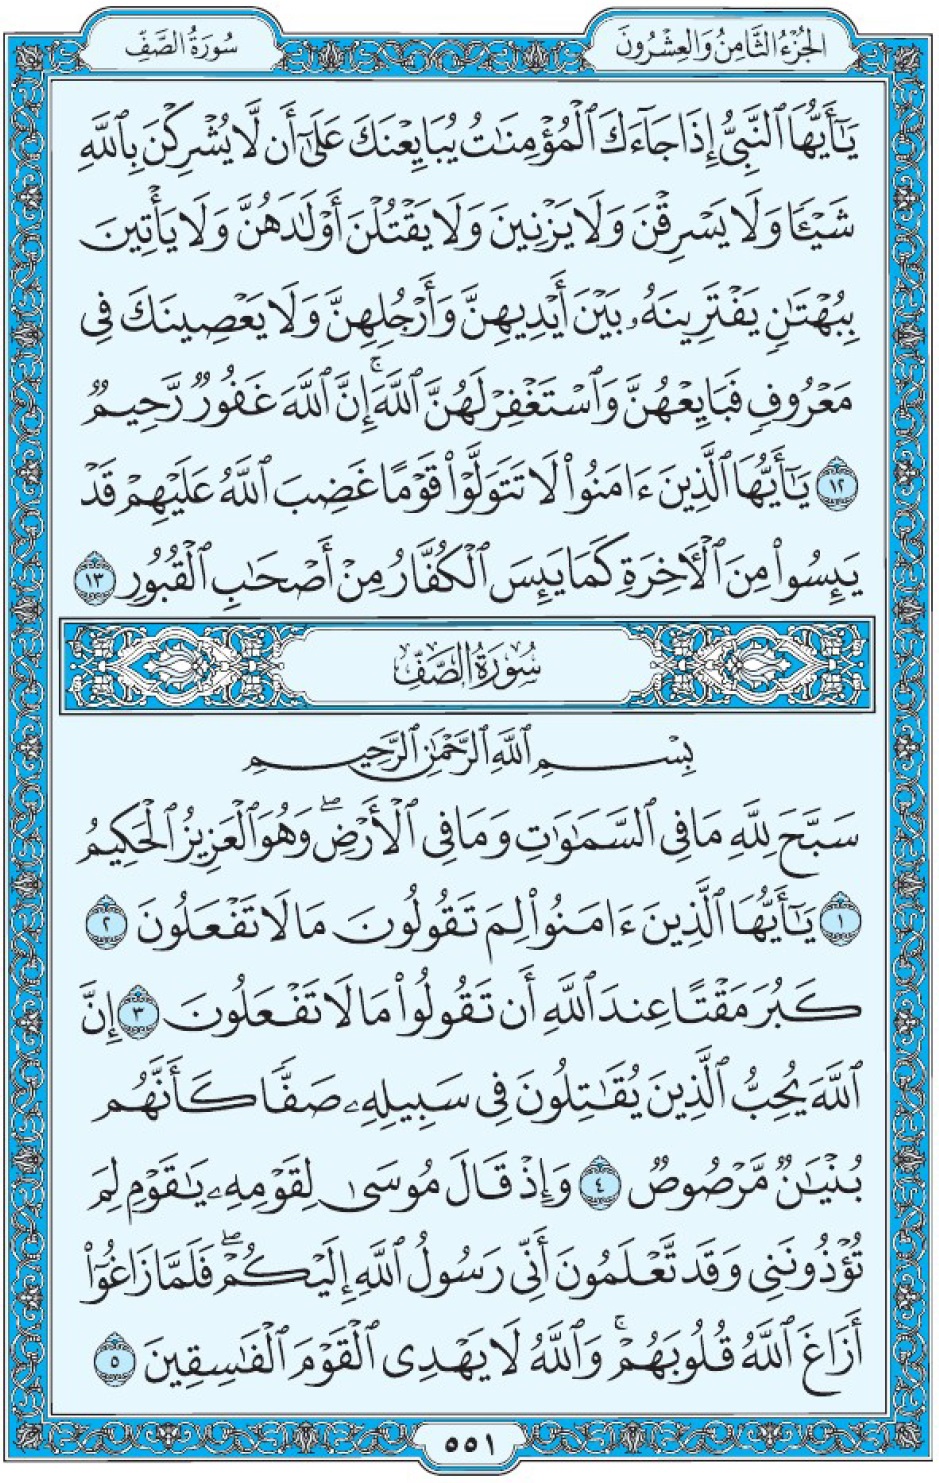 Коран Мединский мусхаф страница 551, сура 61 ас-Сафф سورة ٦١ الصف 